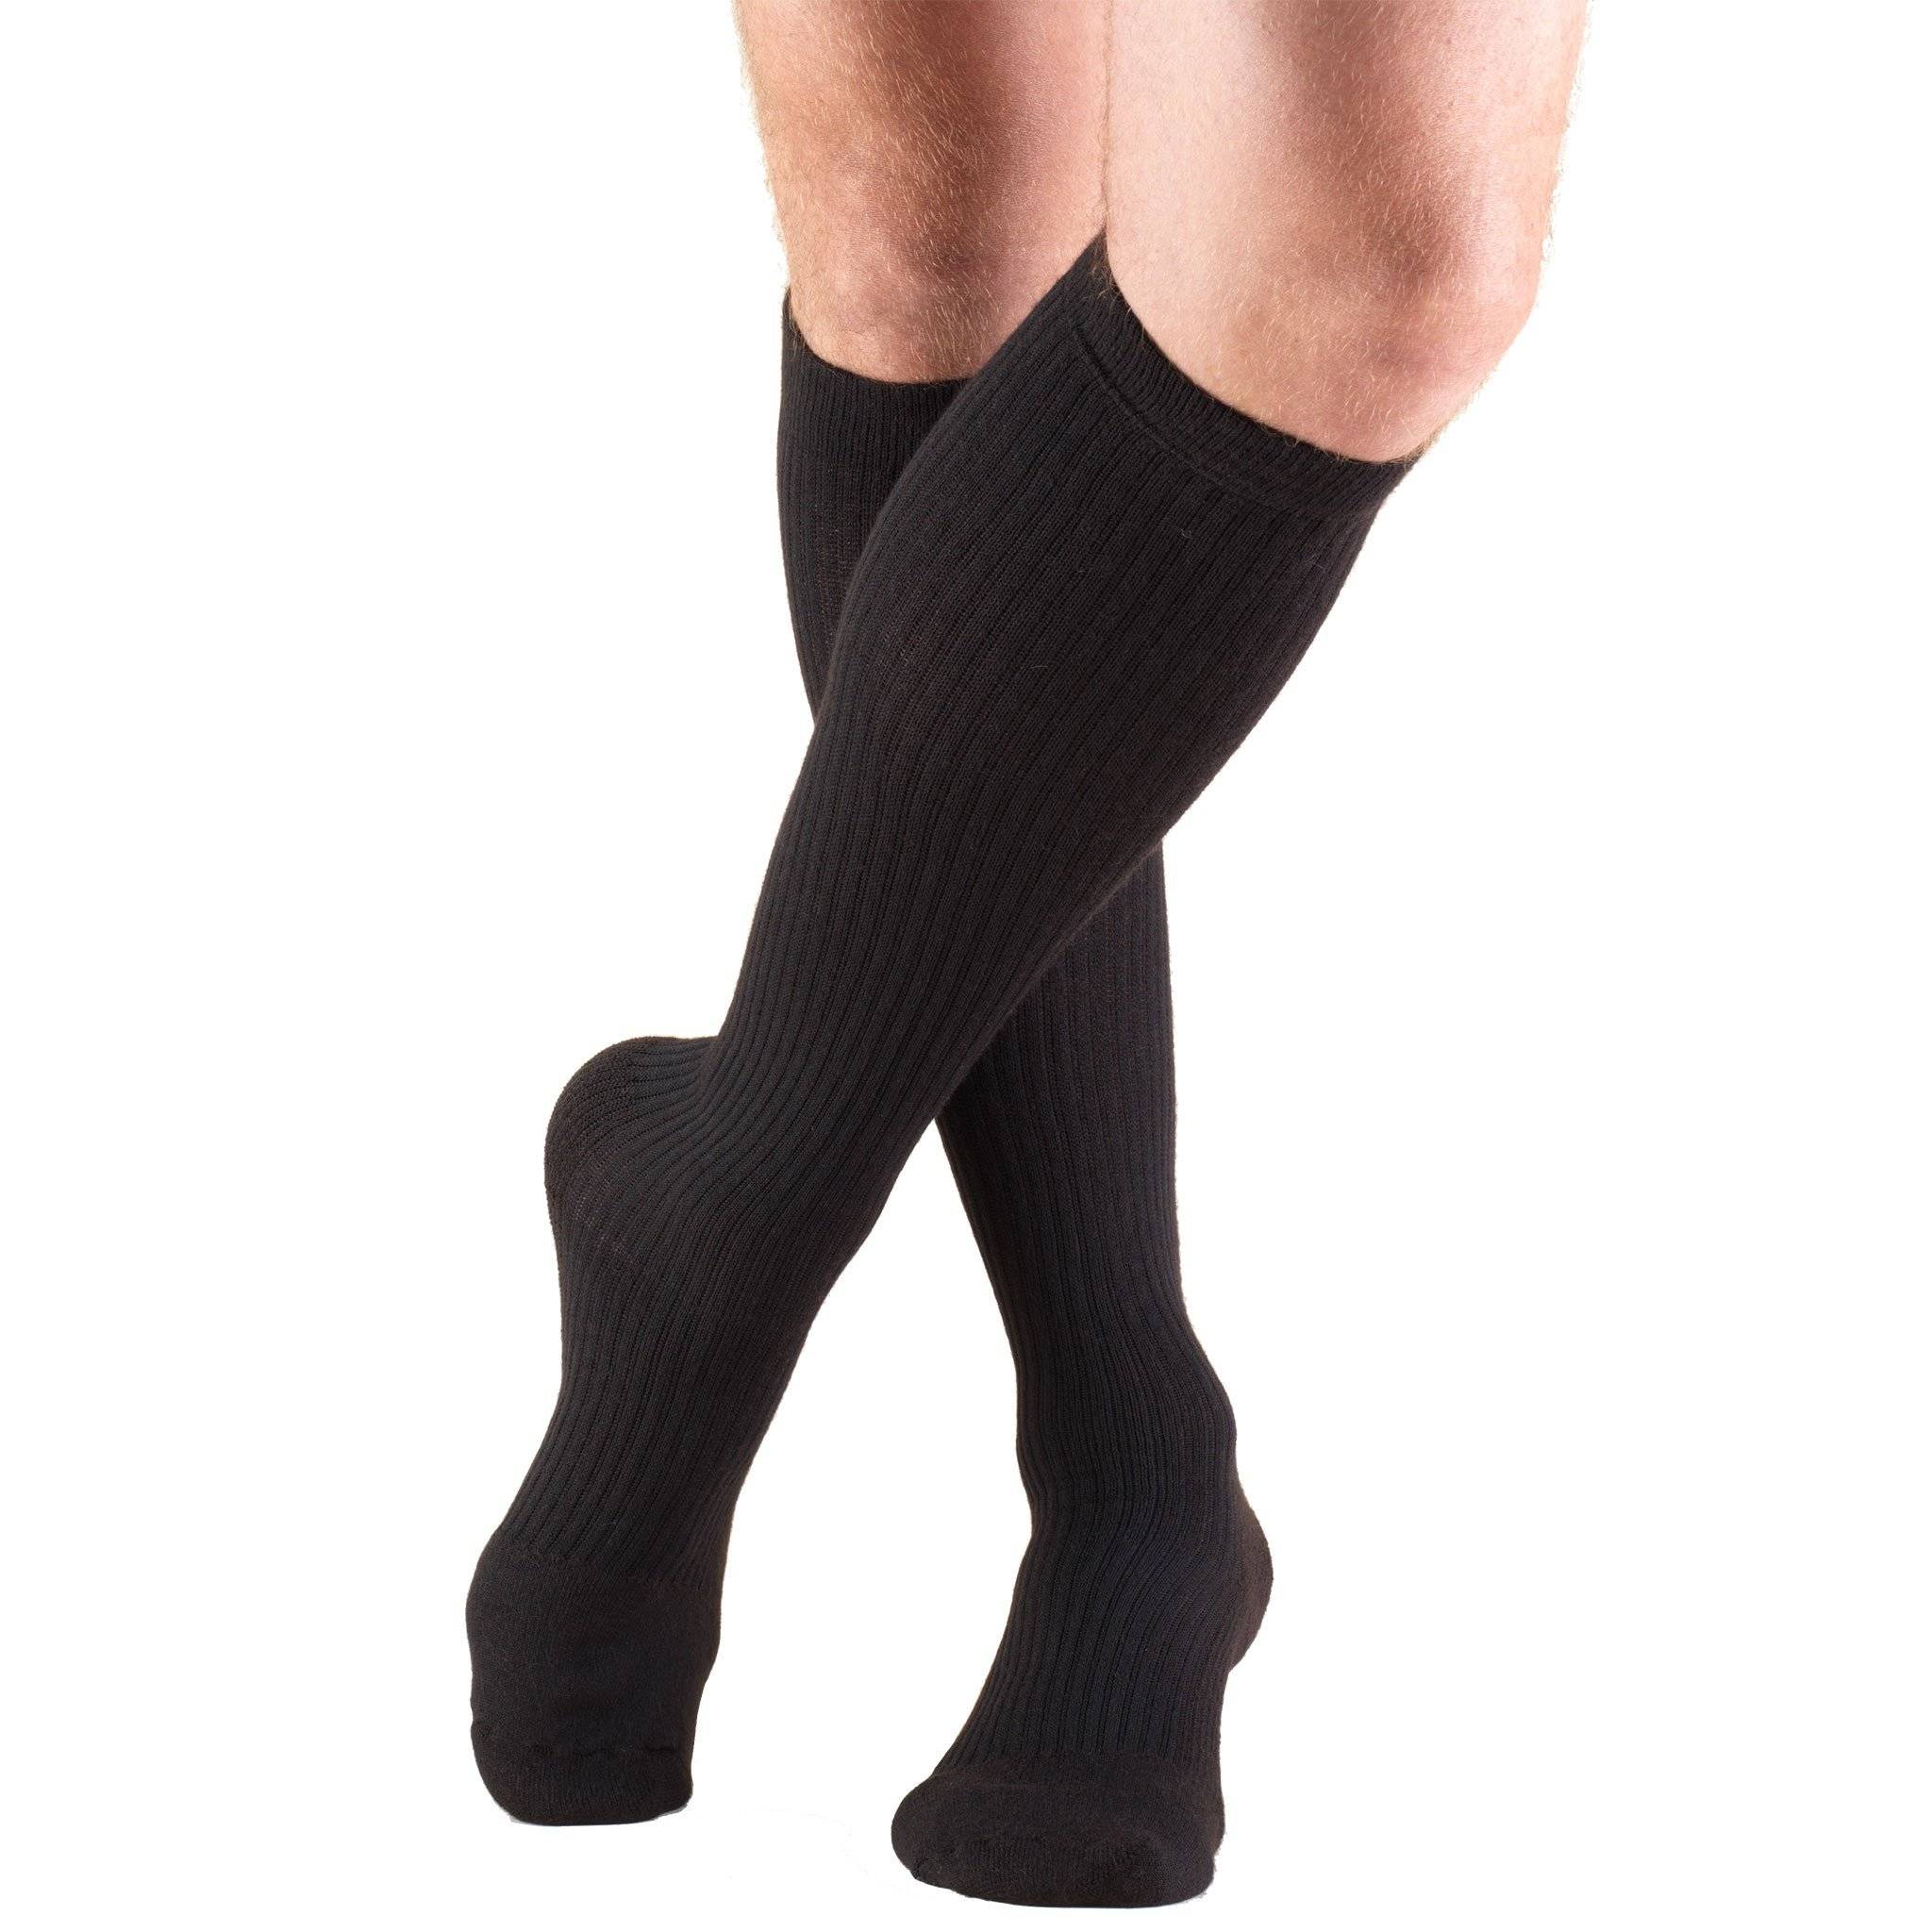 Men's Knee High Socks Dress Socks